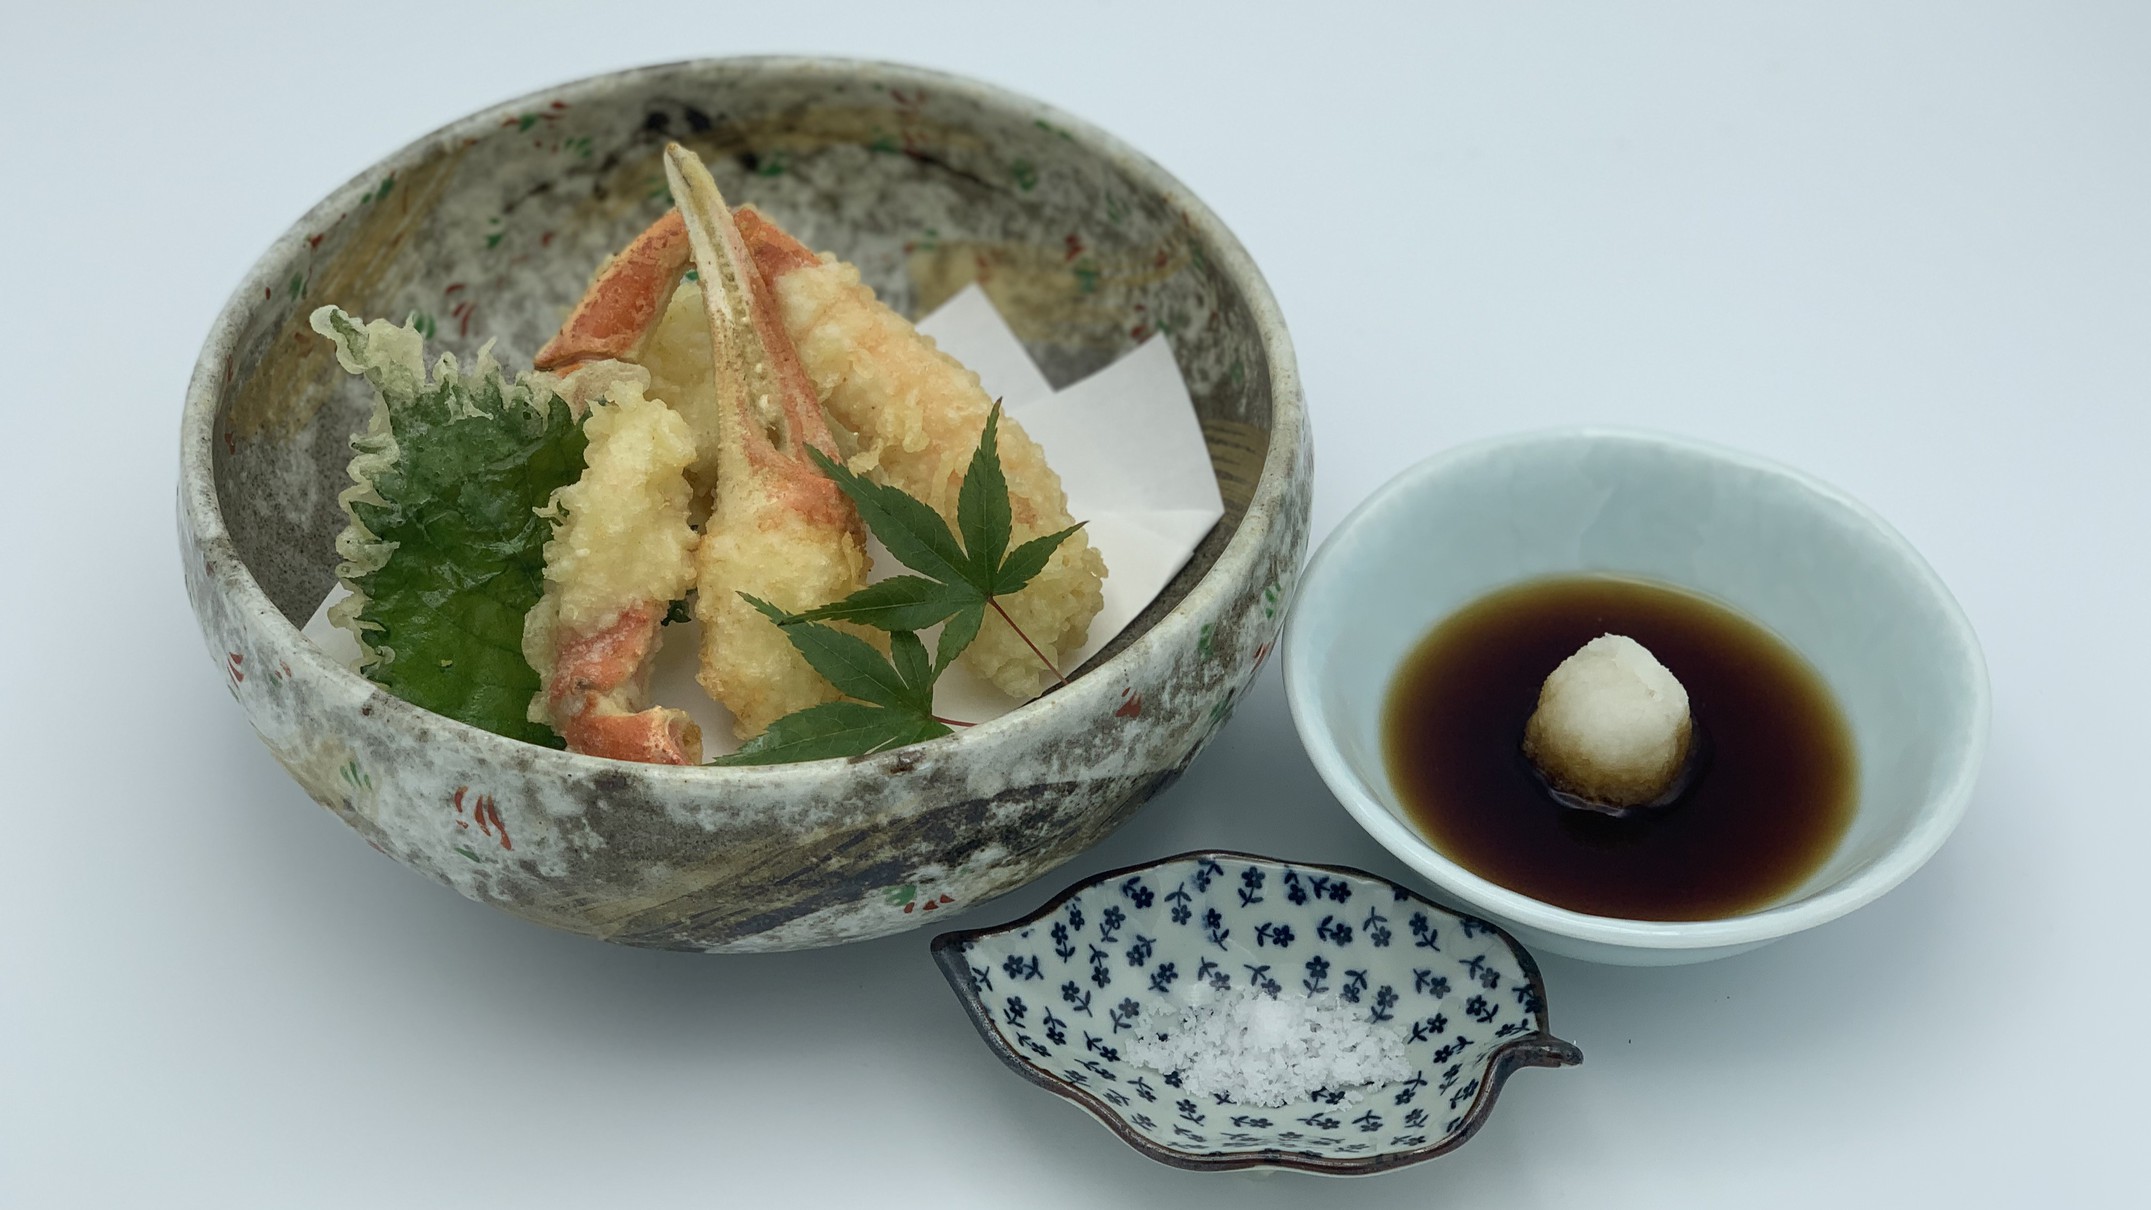 追加料理「柴山がに天ぷら」